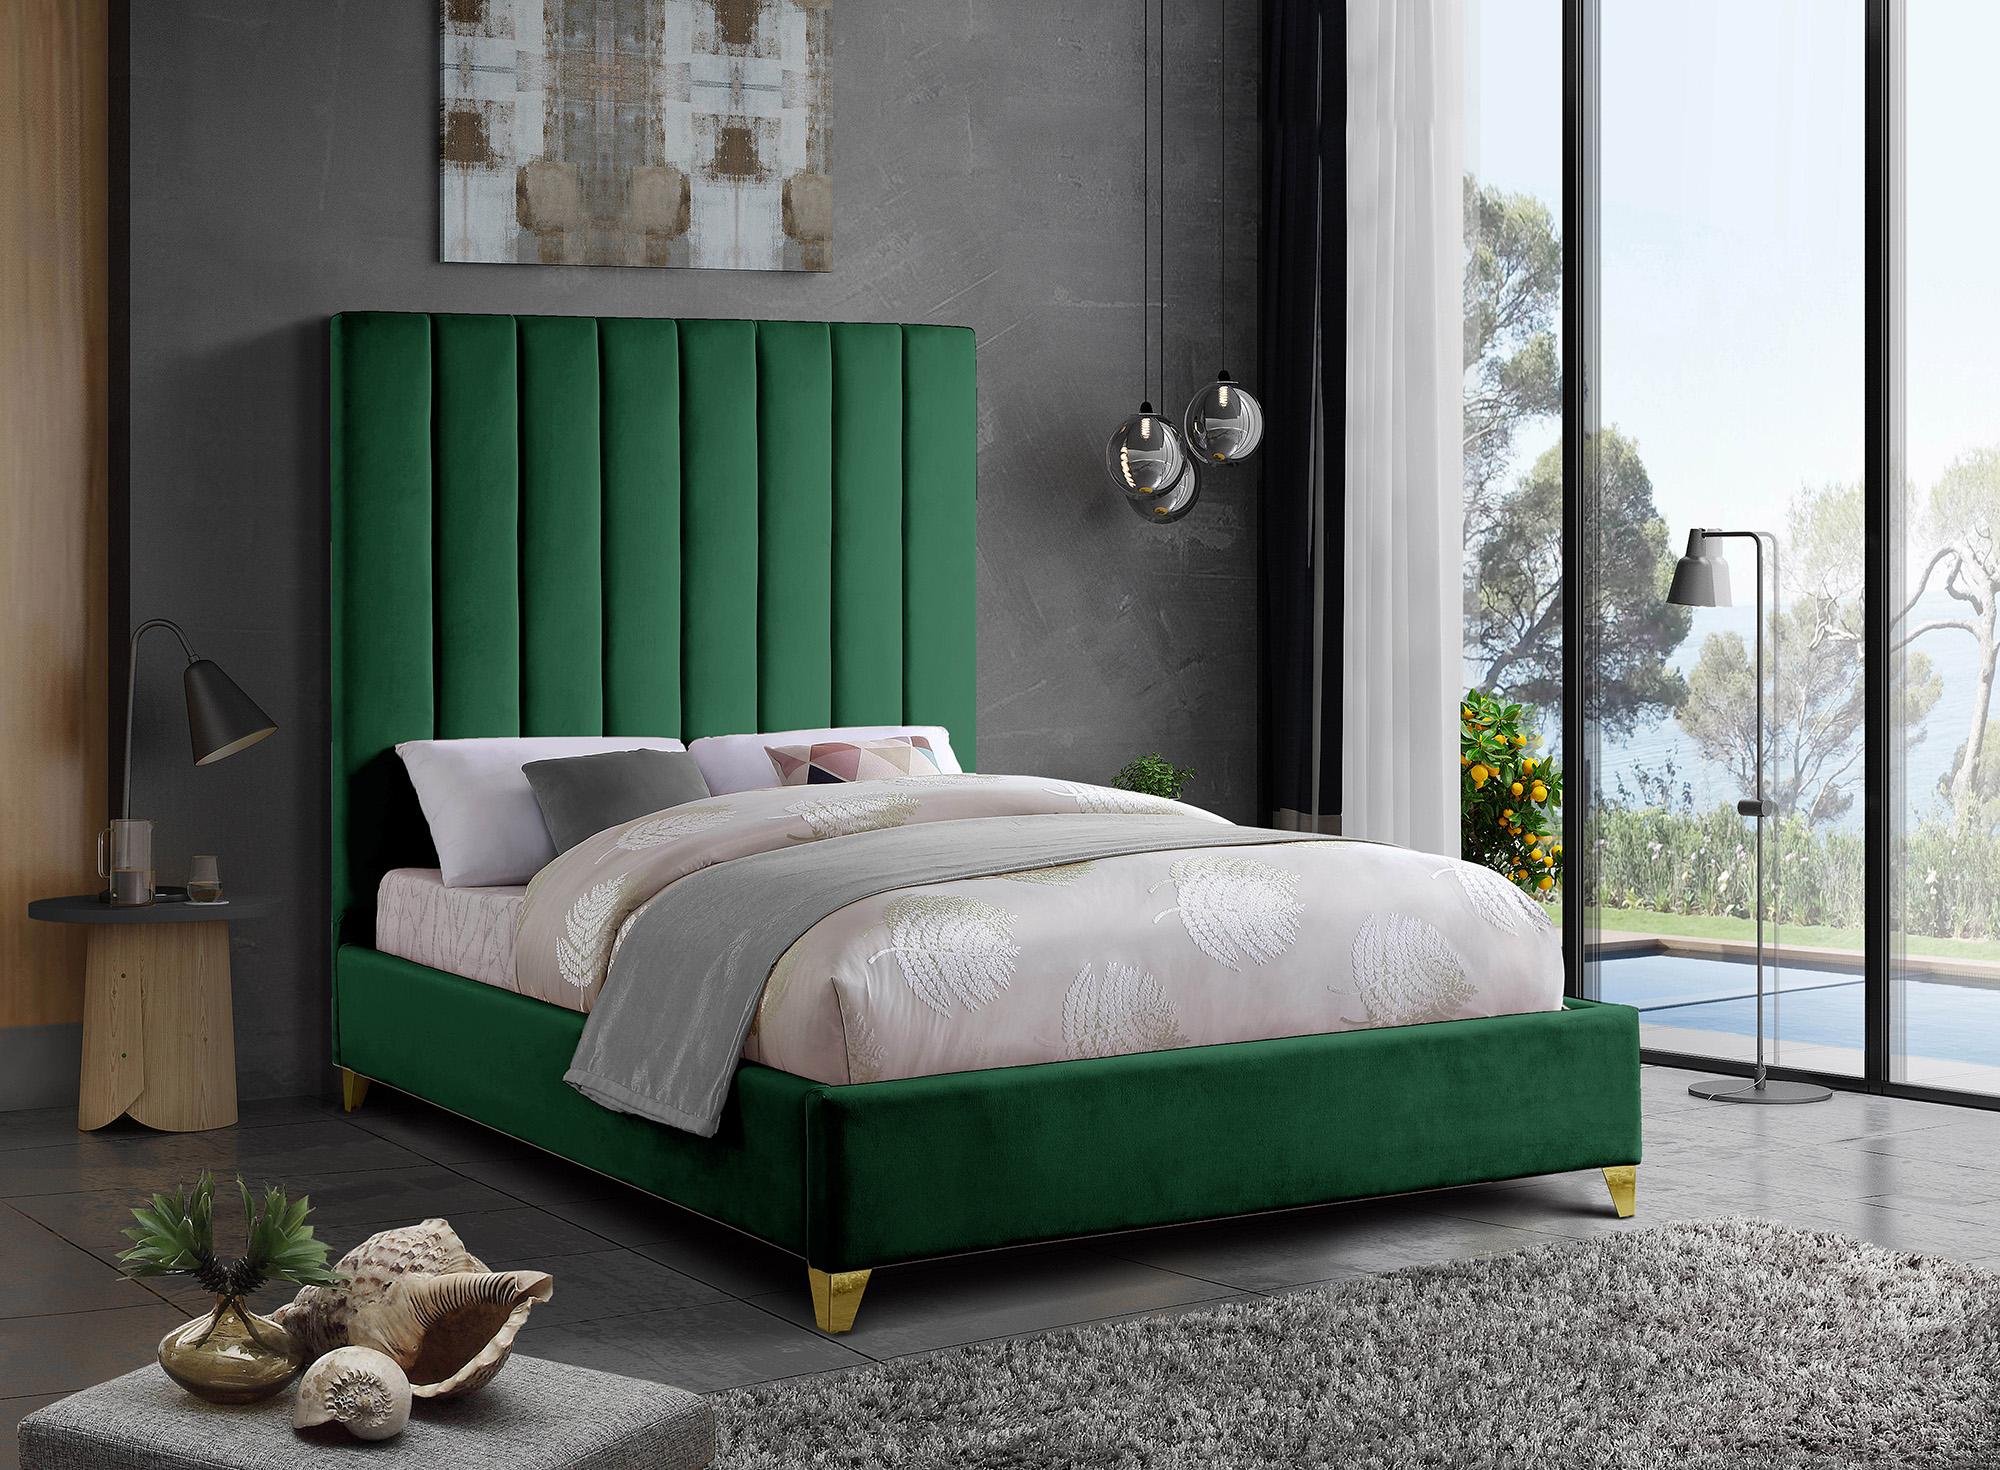 

    
Green Velvet Channel Tufted King Bed VIA ViaGreen-K Meridian Contemporary Modern
